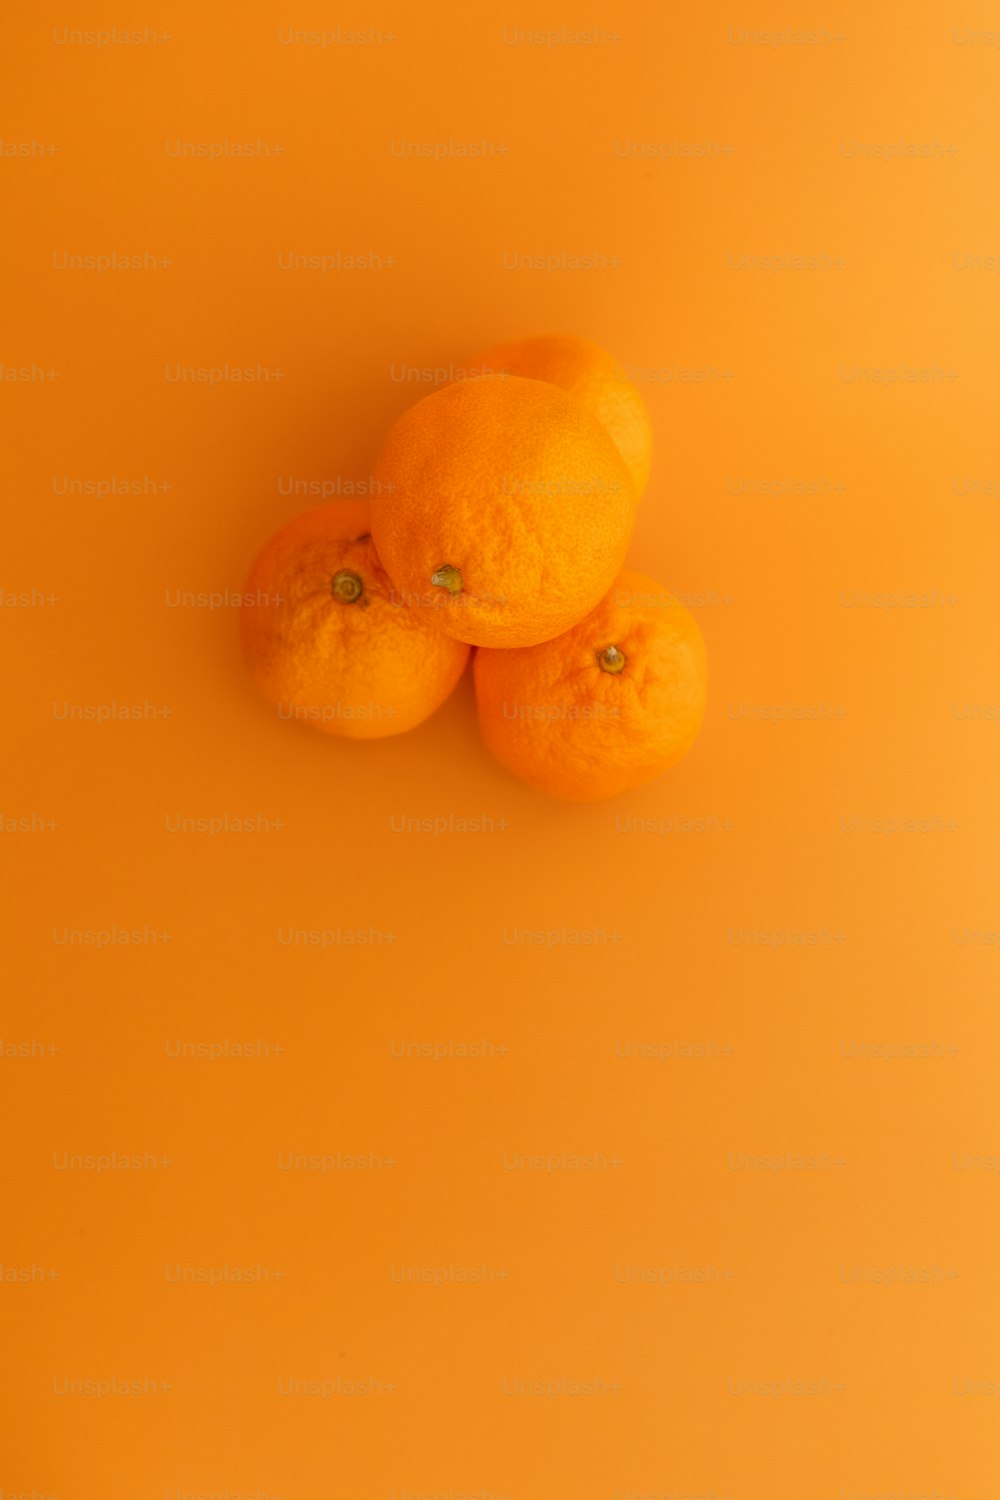 drei Orangen sitzen auf einer gelben Oberfläche